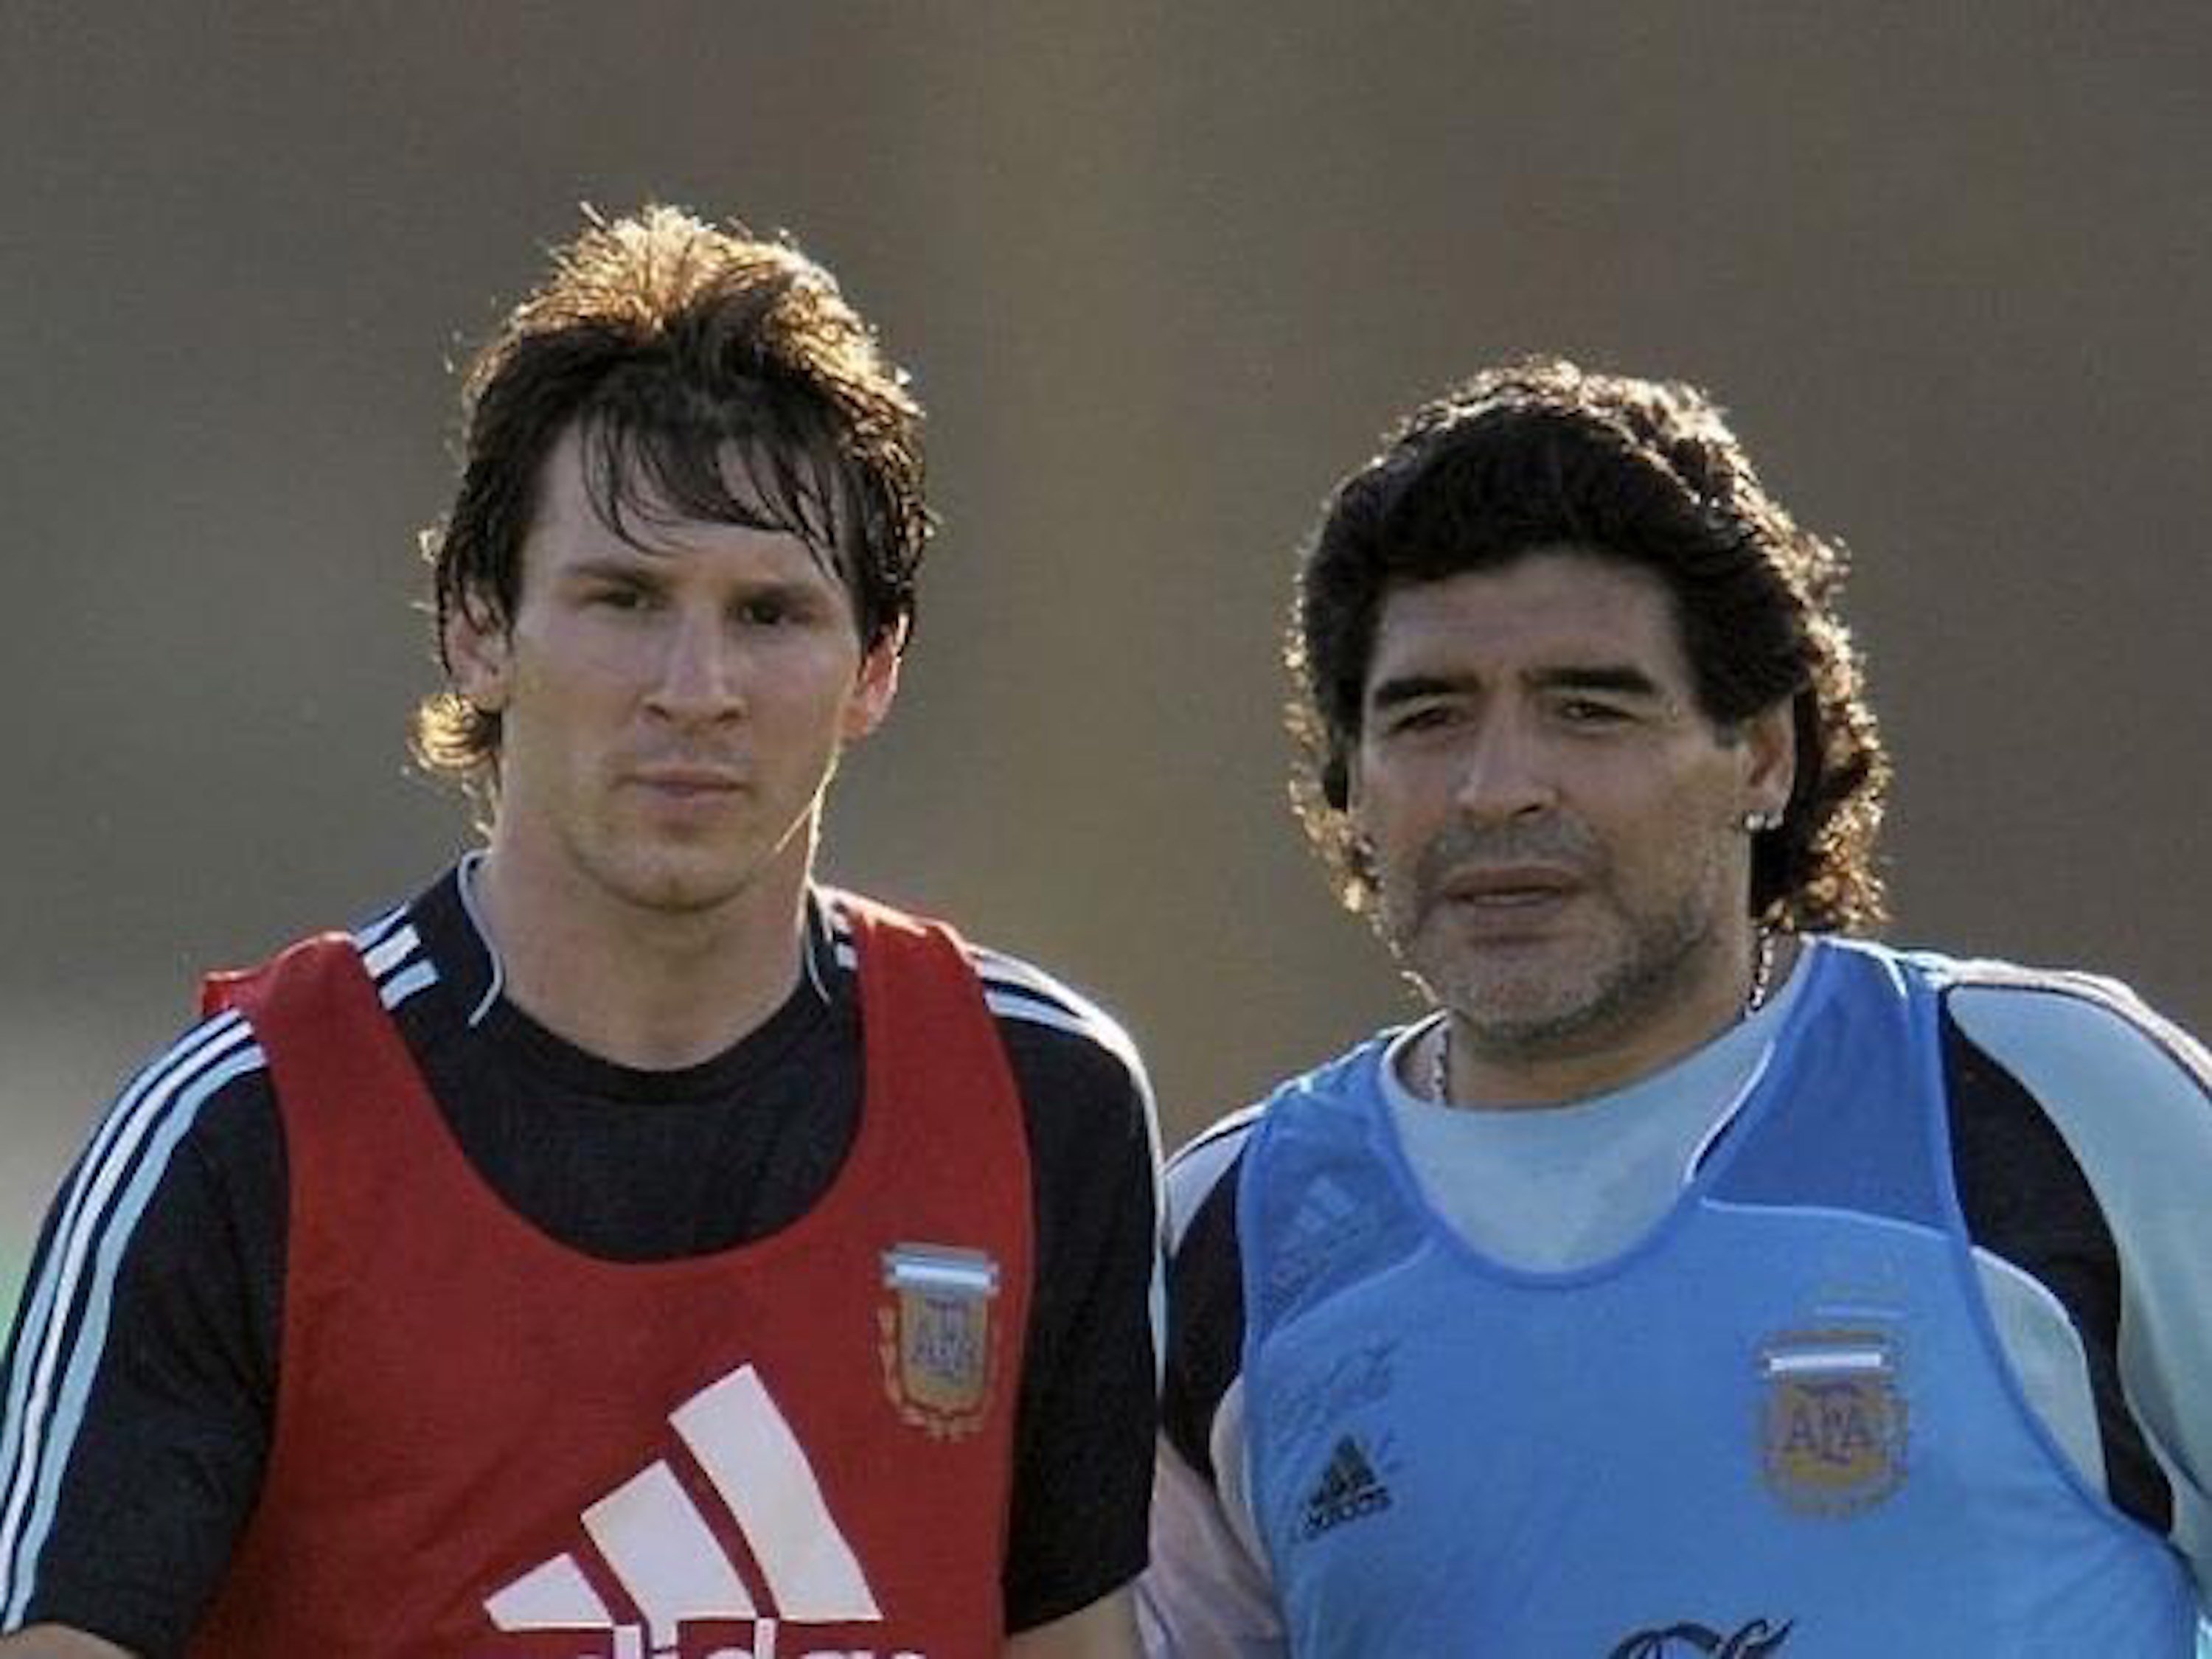 El missatge commovedor de Messi a Maradona després de l'operació